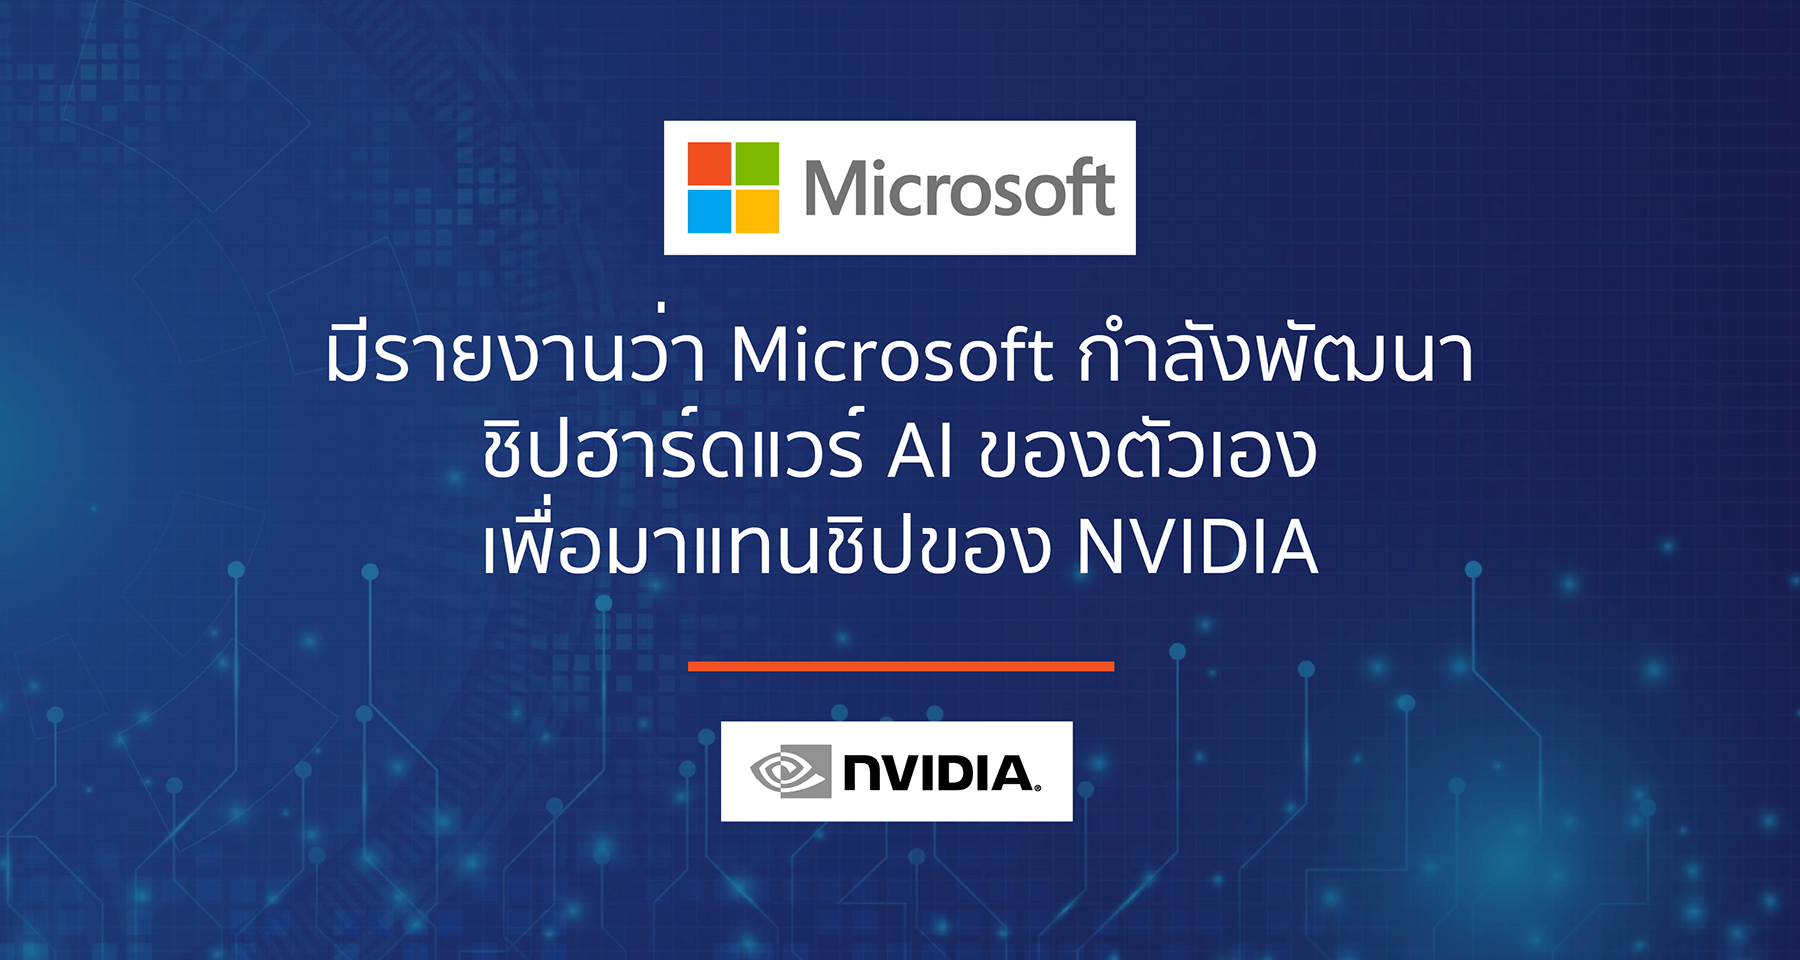 มีรายงานว่า Microsoft กำลังพัฒนาชิปฮาร์ดแวร์ AI ของตัวเอง เพื่อมาแทนชิปของ NVIDIA